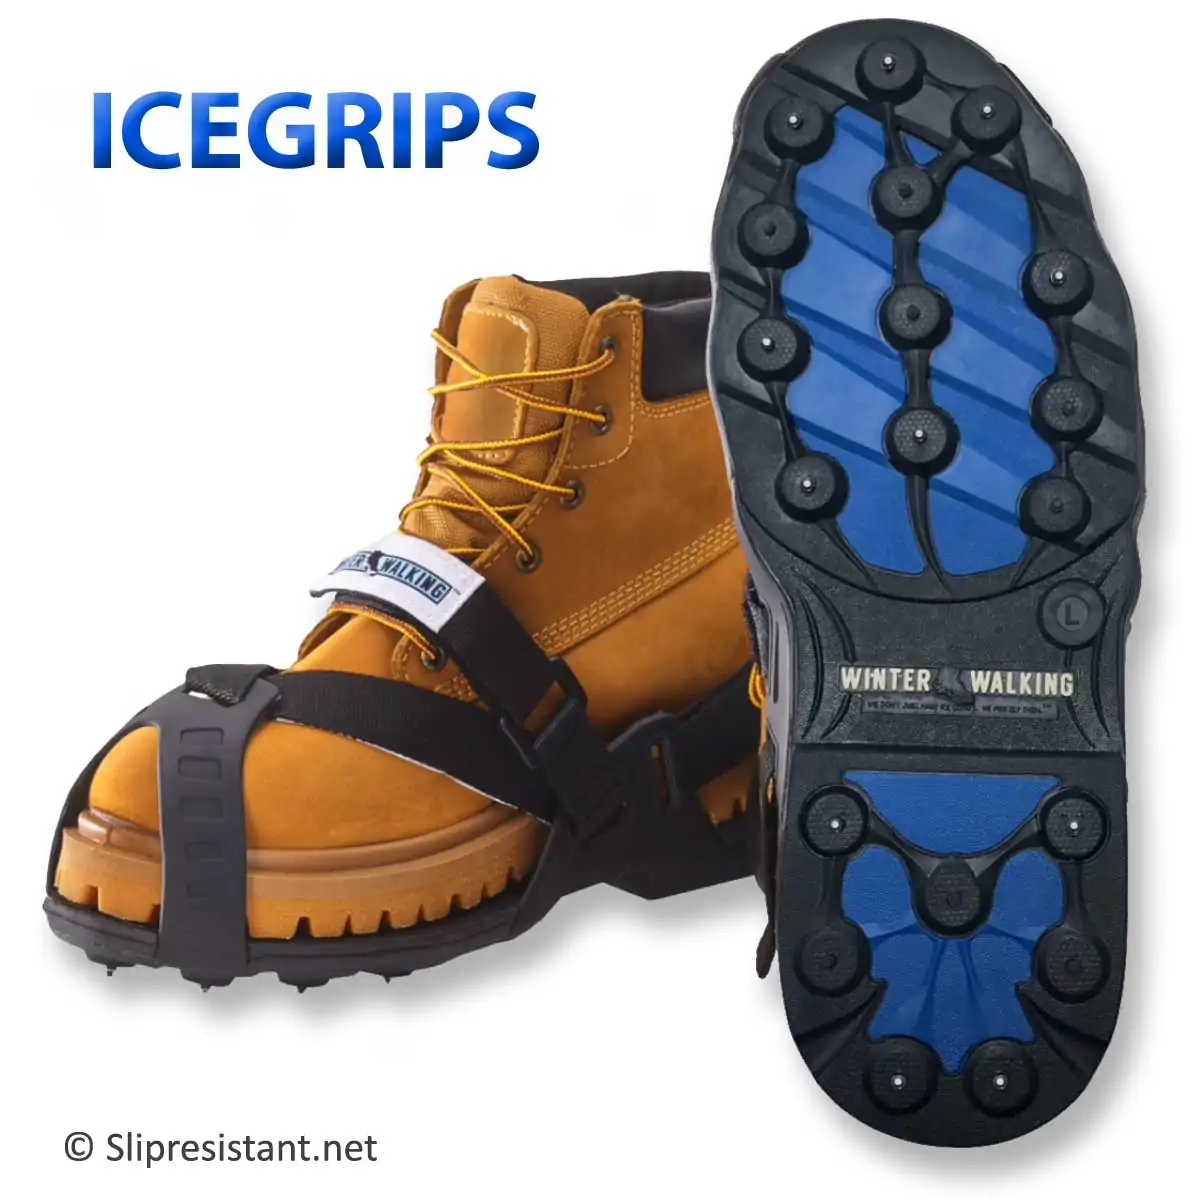 Ice Snow Cleats voor schoenen Laarzen Strap On Walking Cleats 1940's Winter Accessoire Anti Slip Galoshes Schoenplaatjes Verstelbaar voor de meeste maten Schoenen Herenschoenen Laarzen 